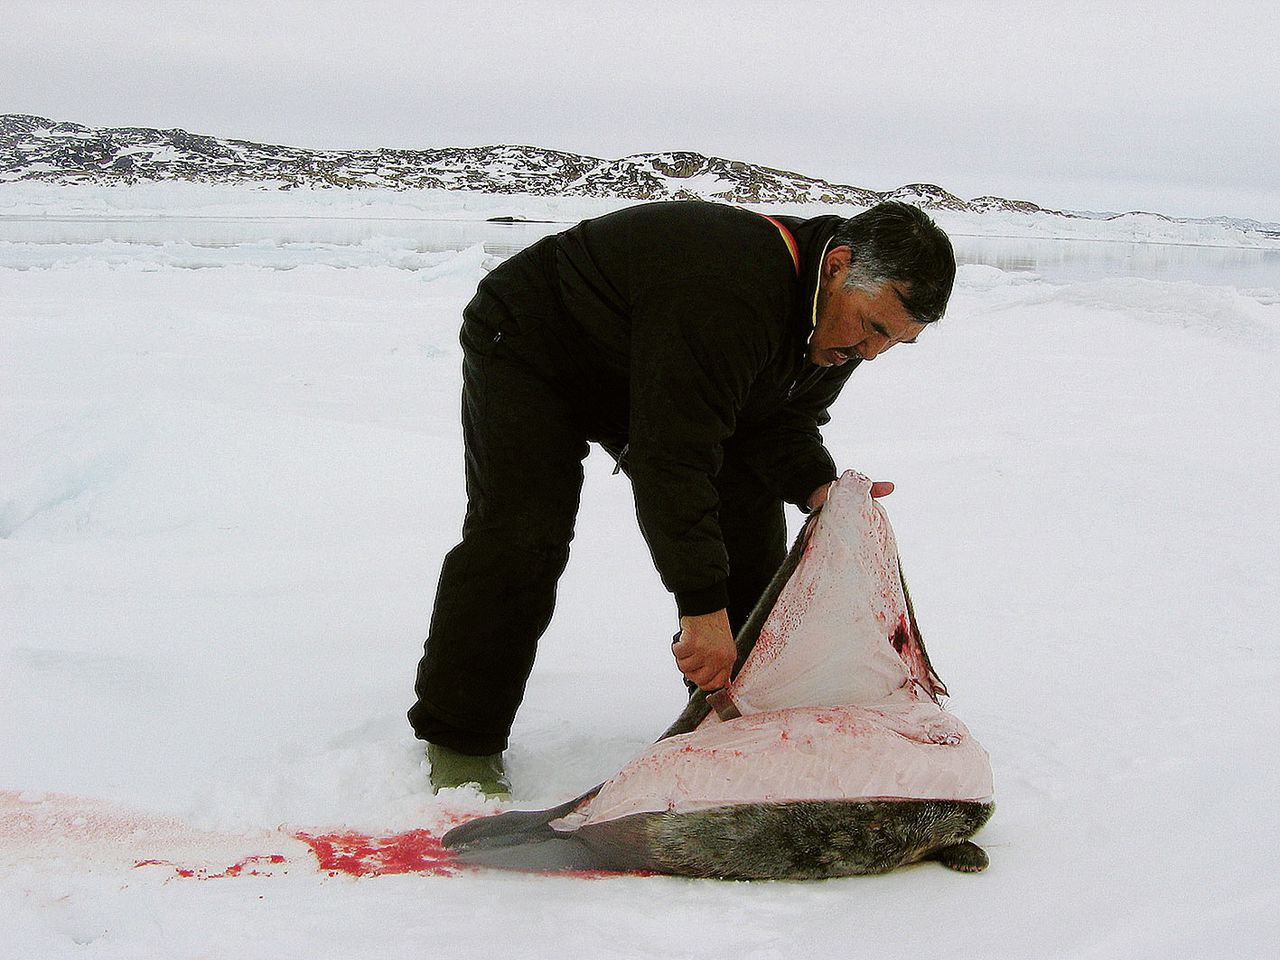 Inuitman snijdt een brok van zijn traditionele voeding: vet vlees.